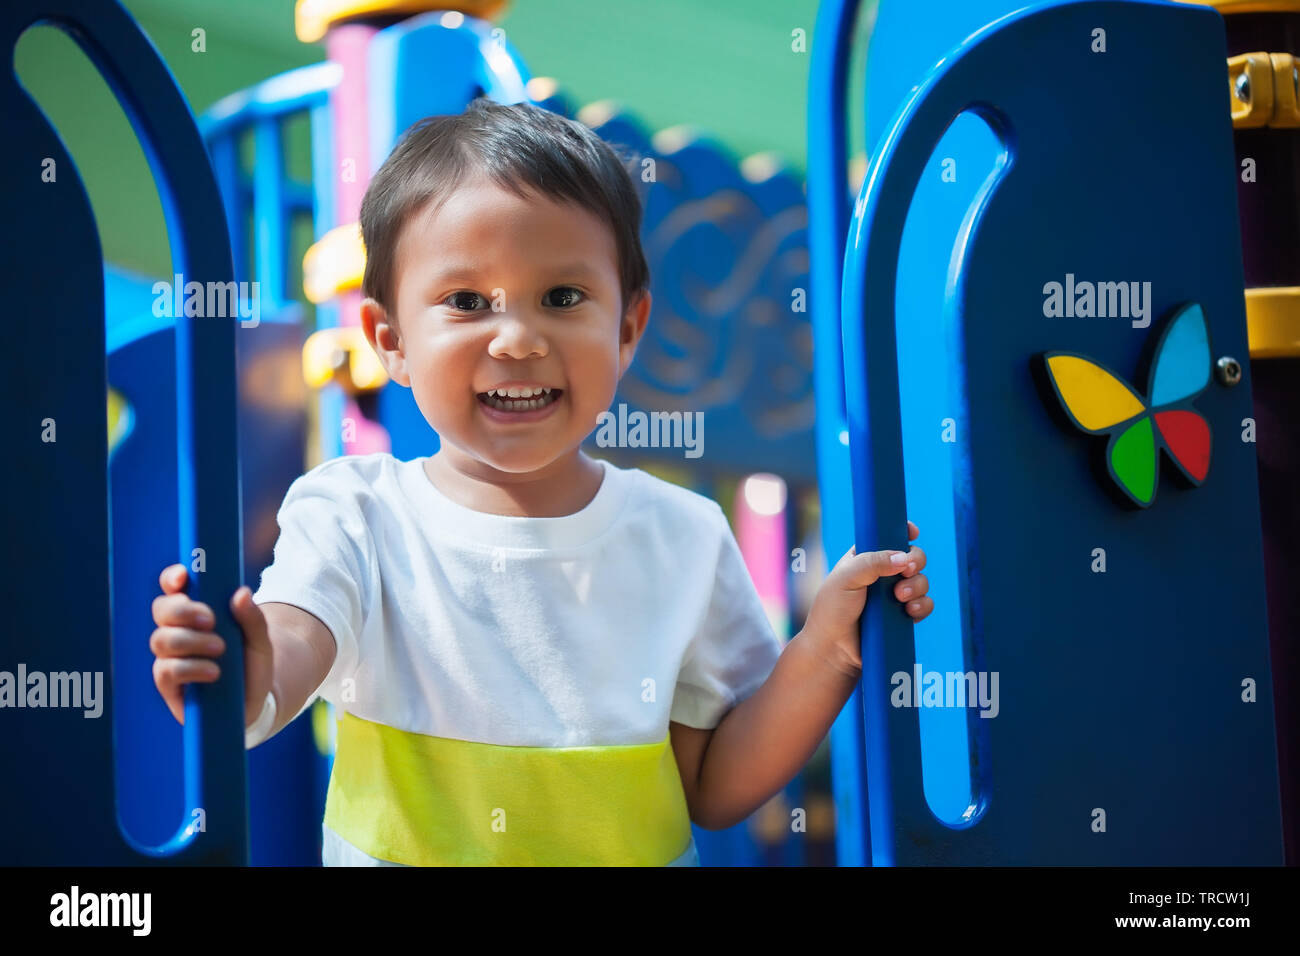 Sonriente joven niño sosteniendo desde un parque infantil gimnasia de selva con una mirada emocionada y lista para divertirse. Foto de stock